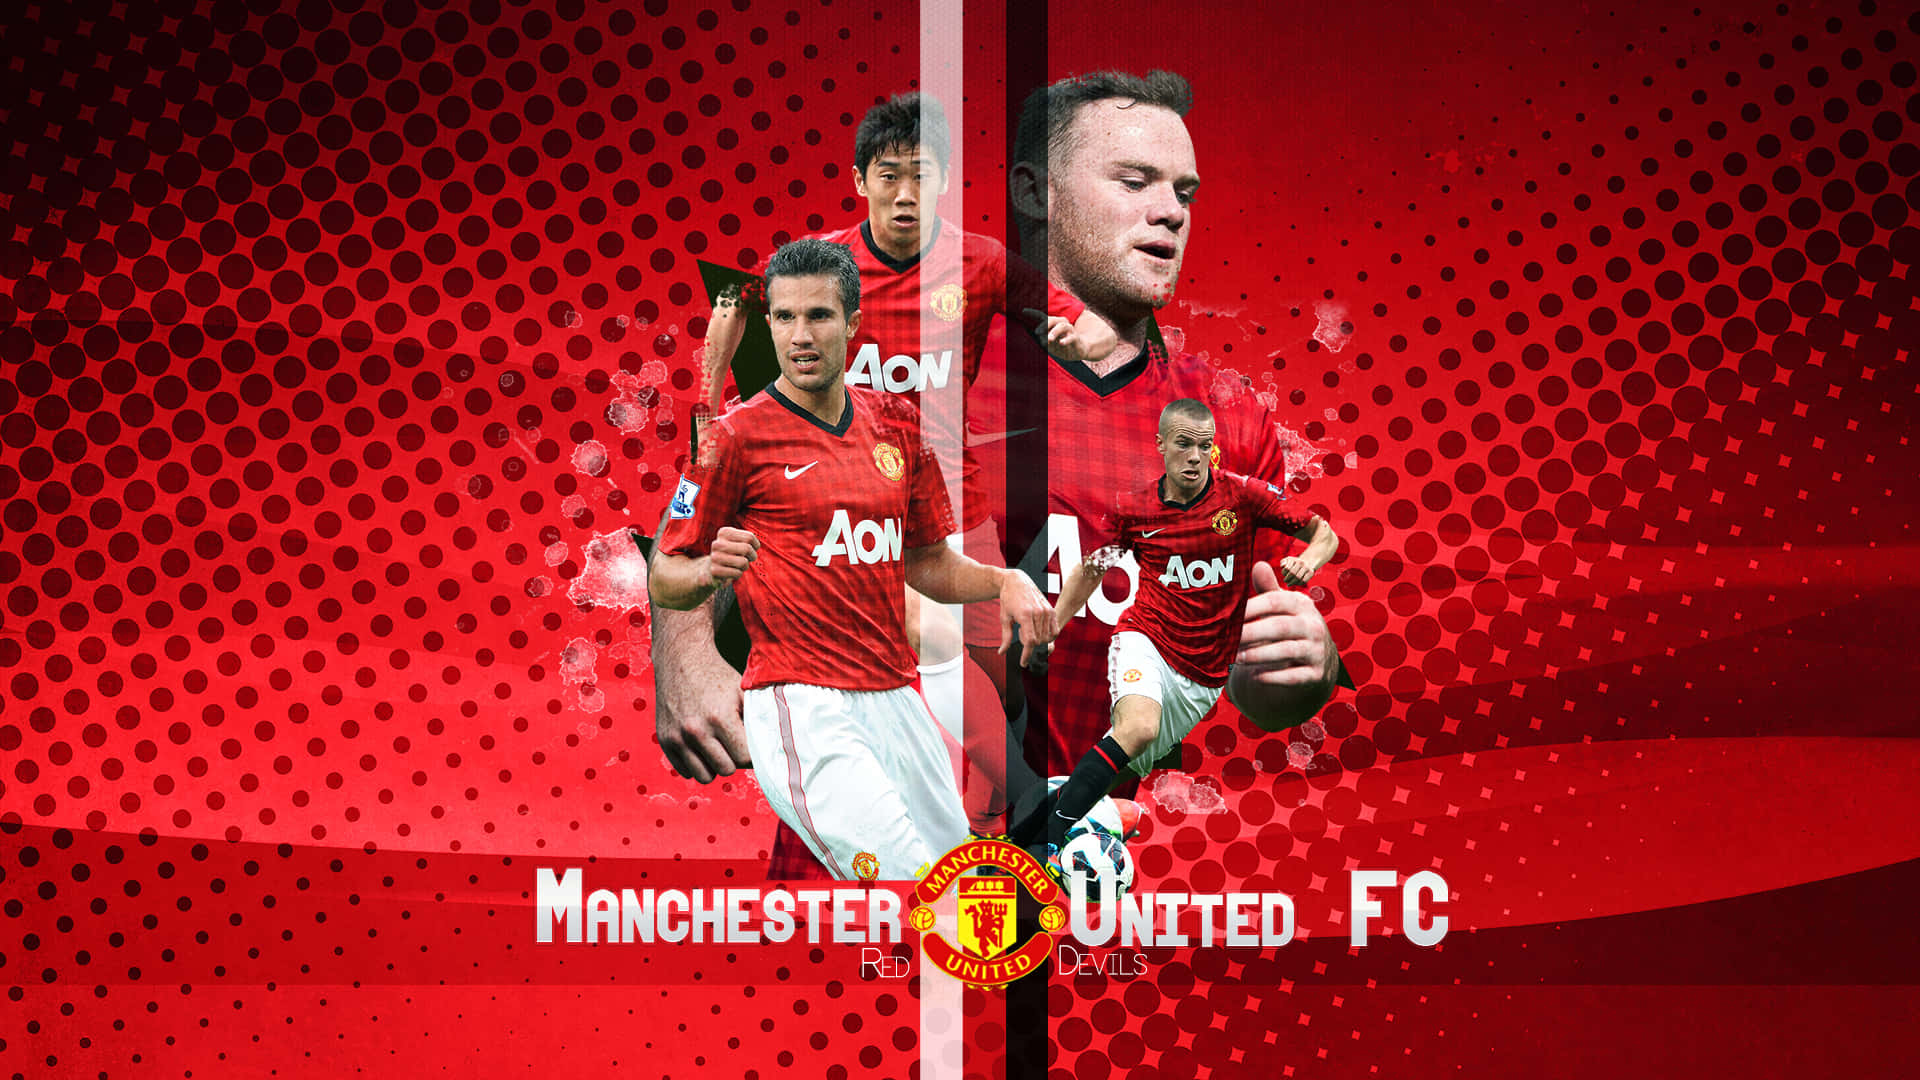 Diesiegreiche Mannschaft Von Manchester United Wallpaper